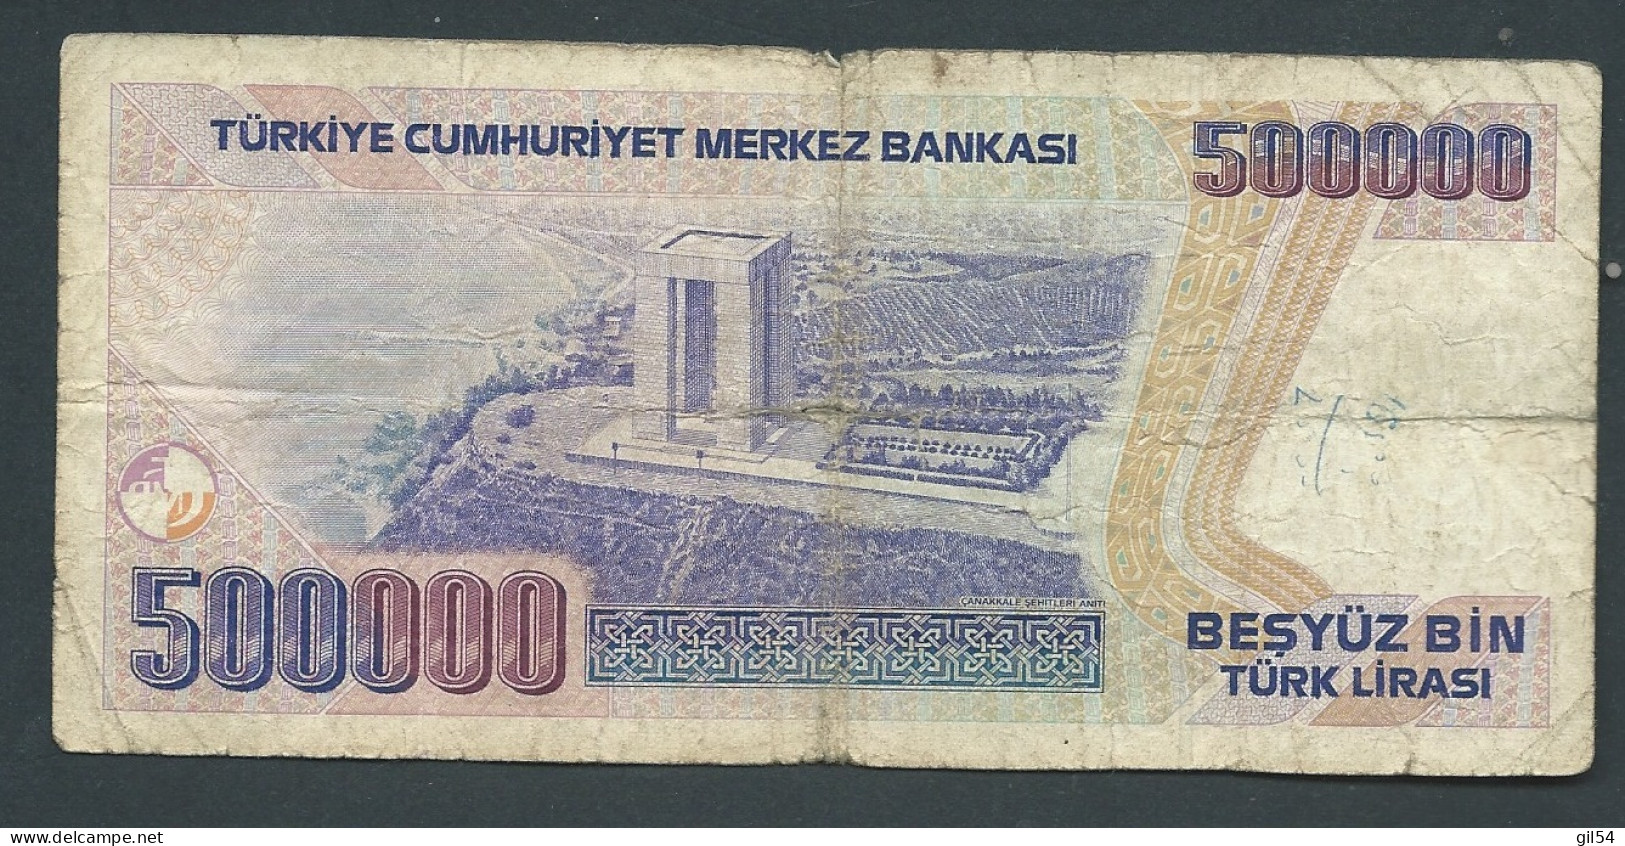 BILLET , TURQUIE , 500000 Türk Lirasi , 1970  - G 71499901 LAURA 12213 - Turkije